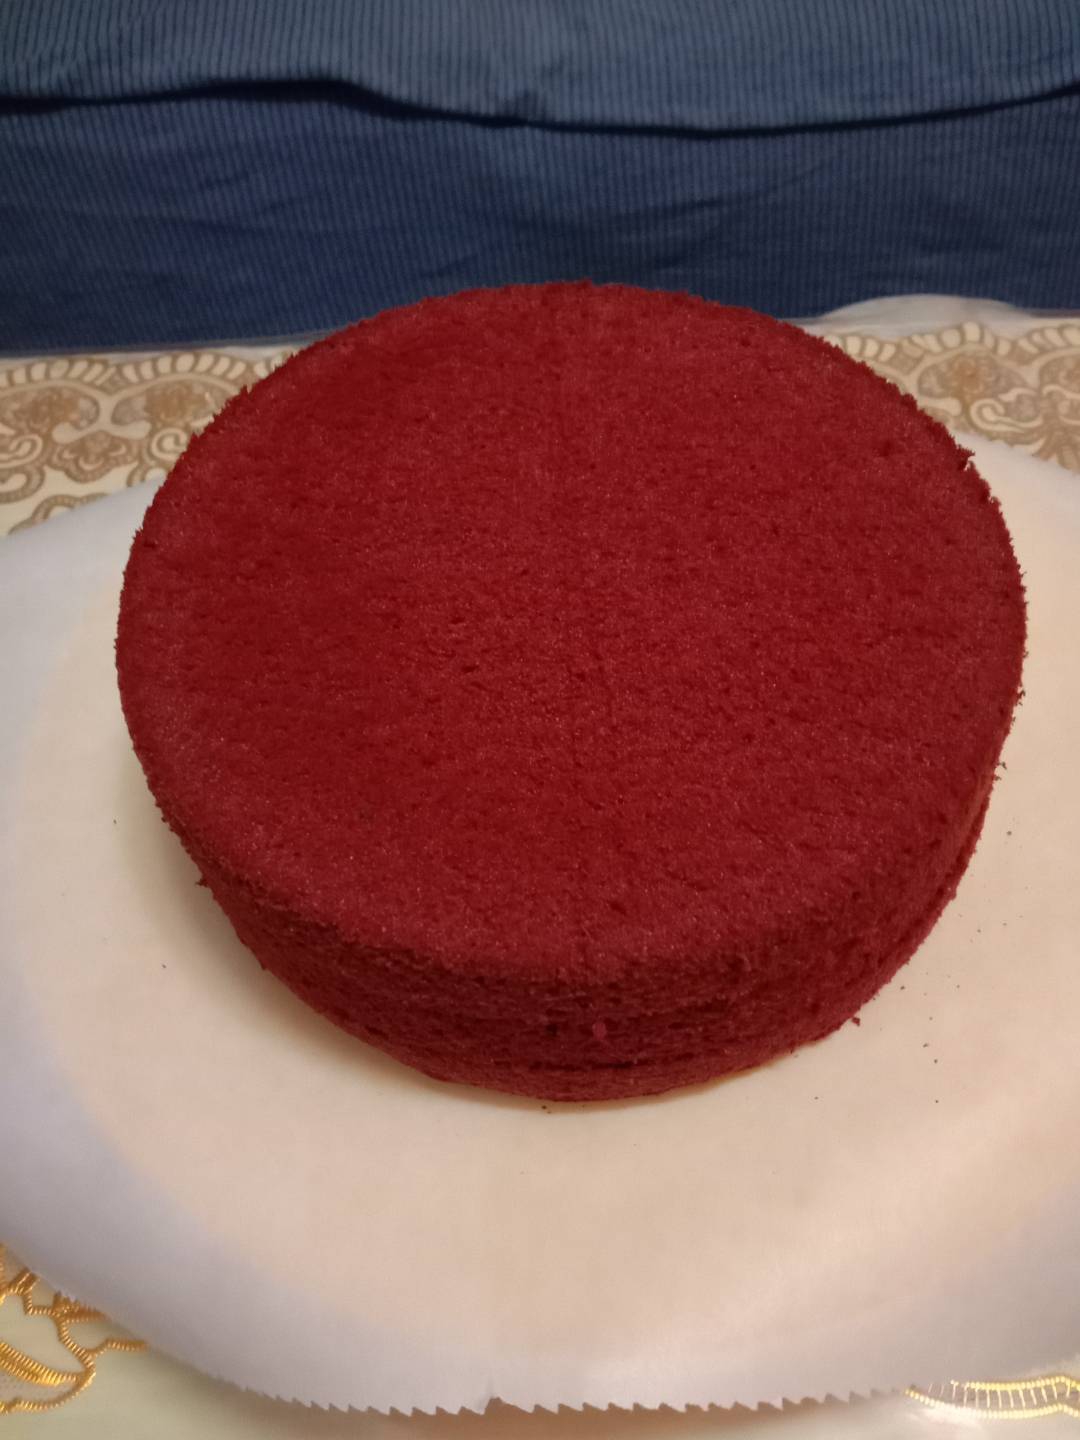 红丝绒蛋糕的做法